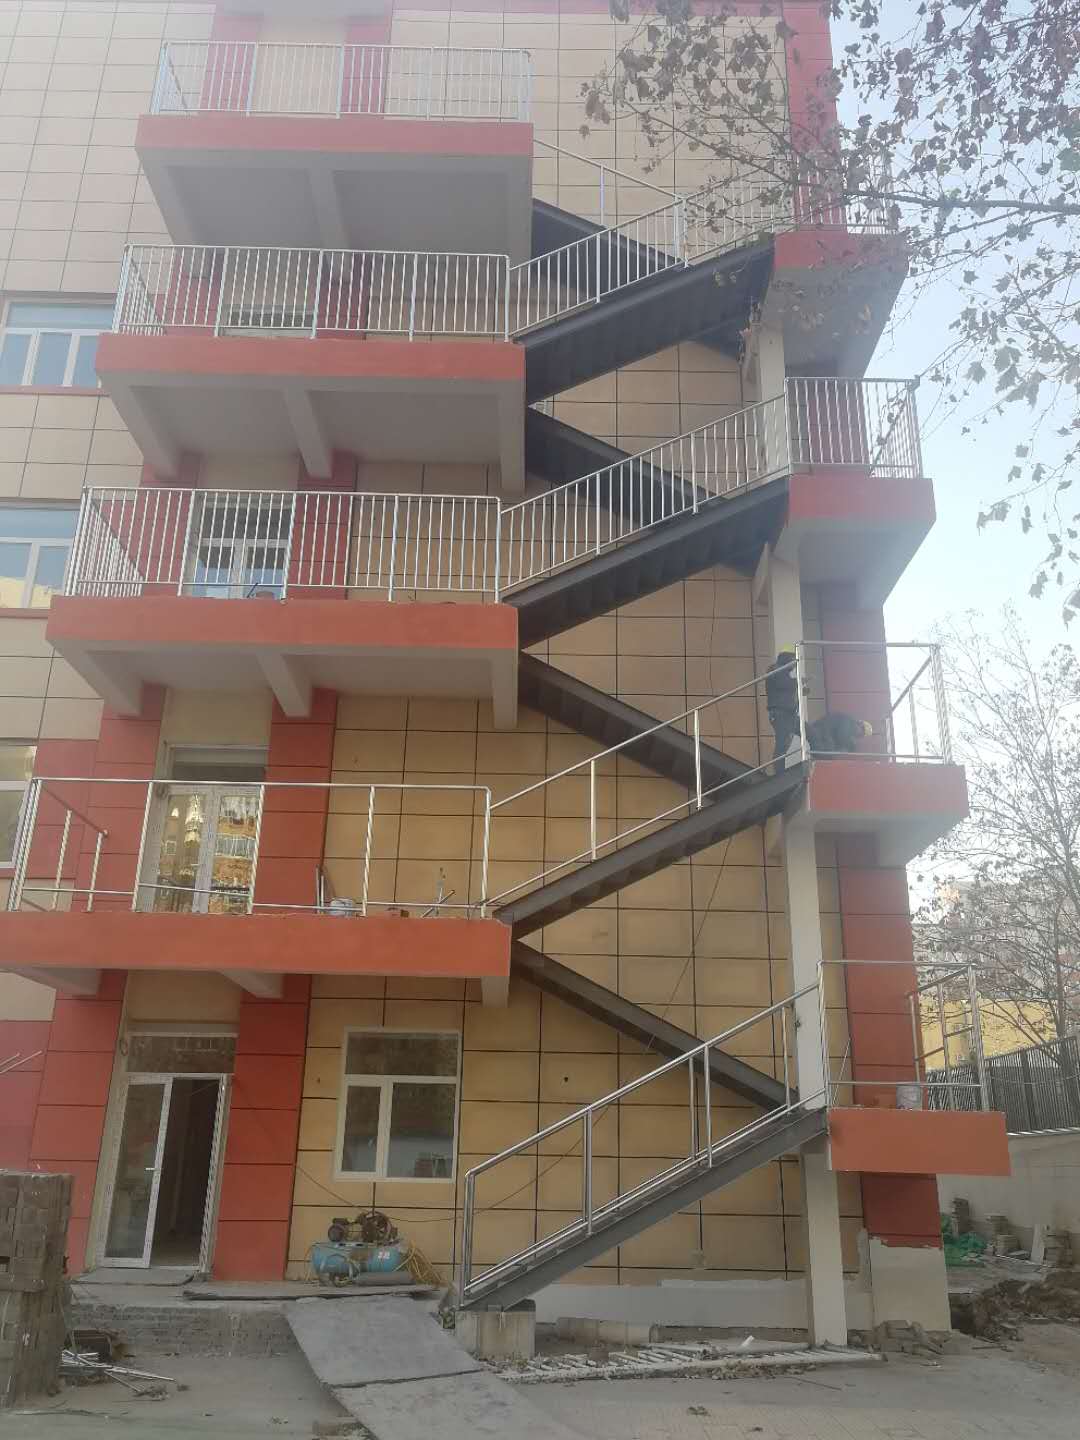 北京钢结构楼梯厂家/专业钢结构公司